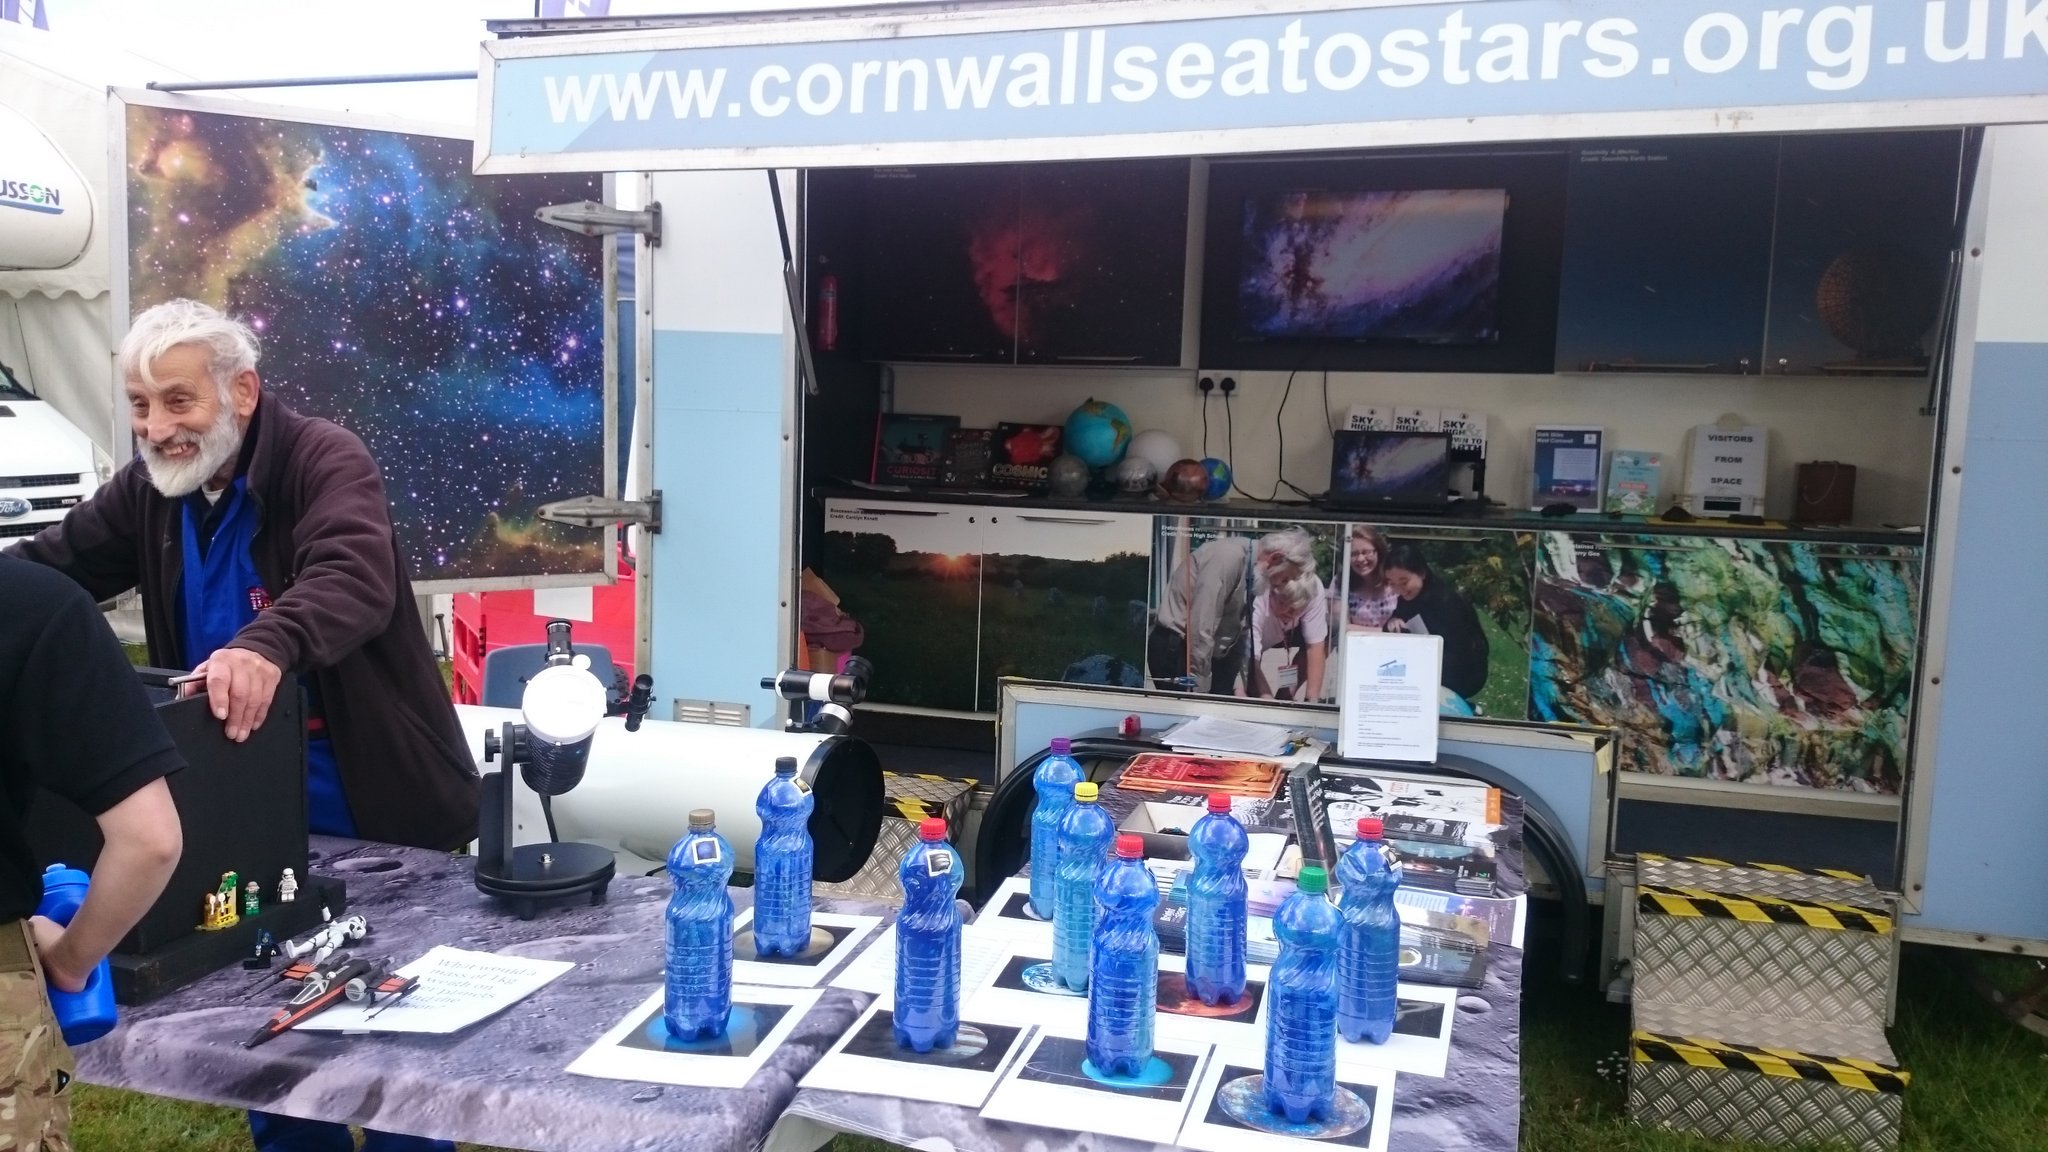 Cornwall Sea to Stars at the Royal Cornwall Show 2019